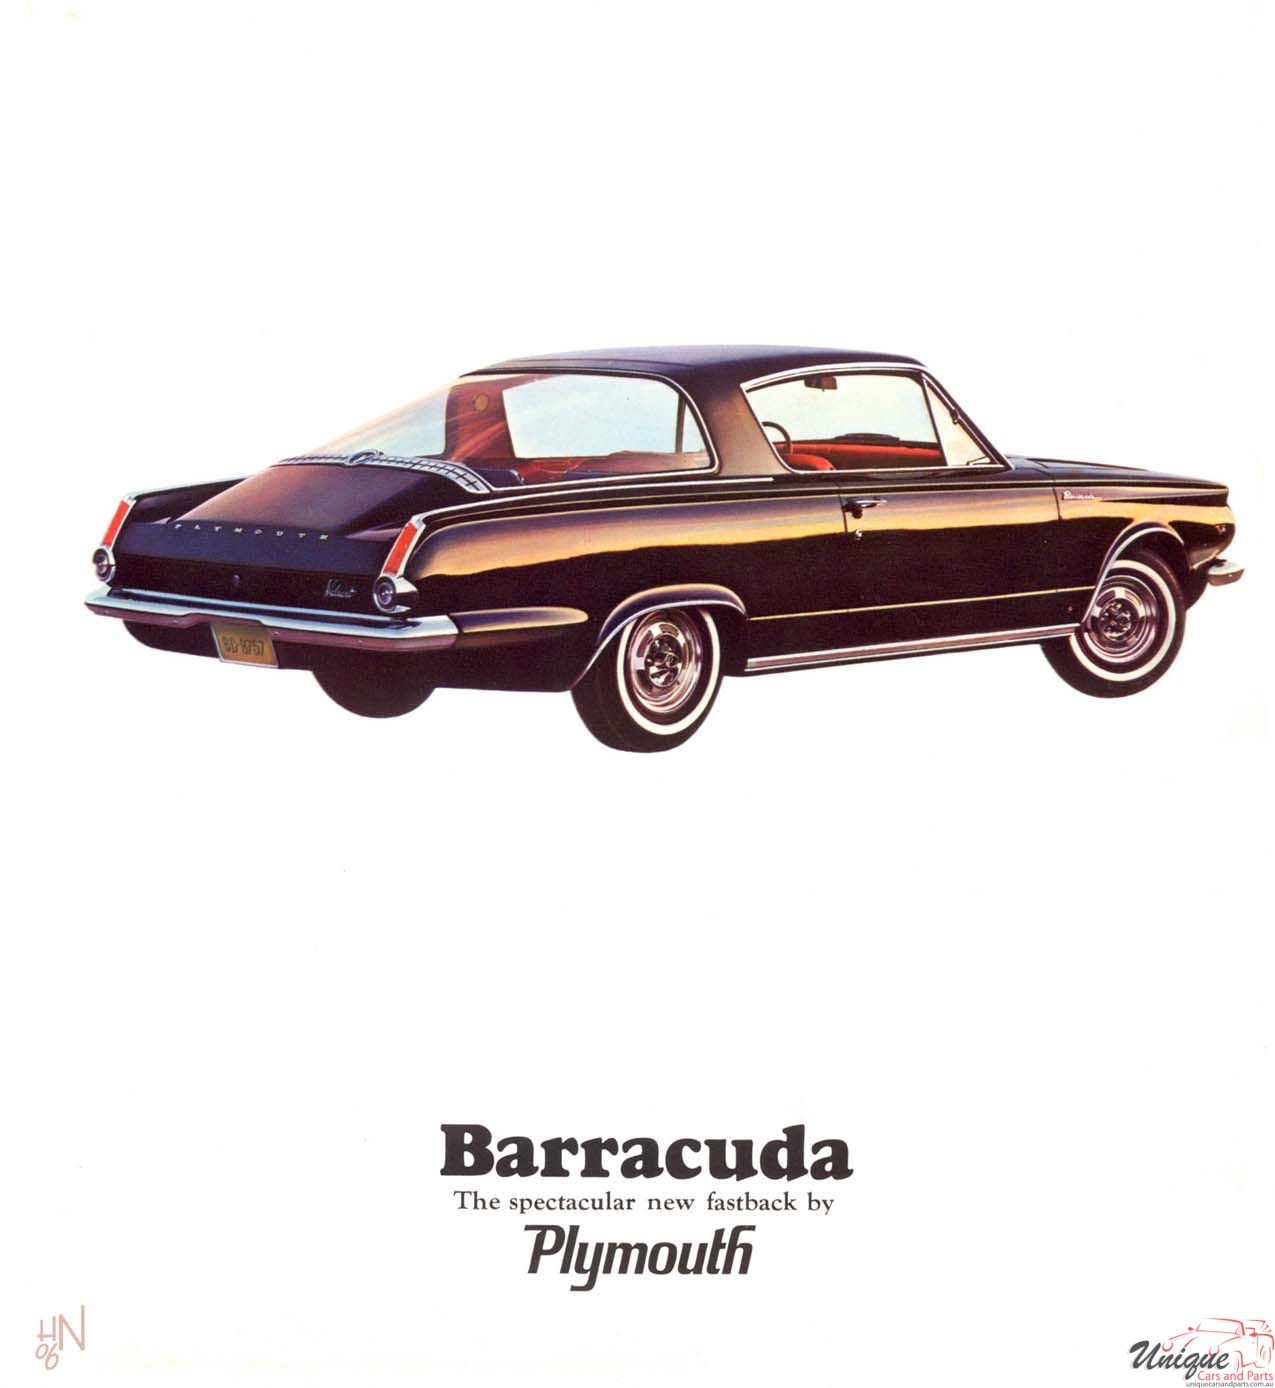 1964 Plymouth Barracuda Brochure